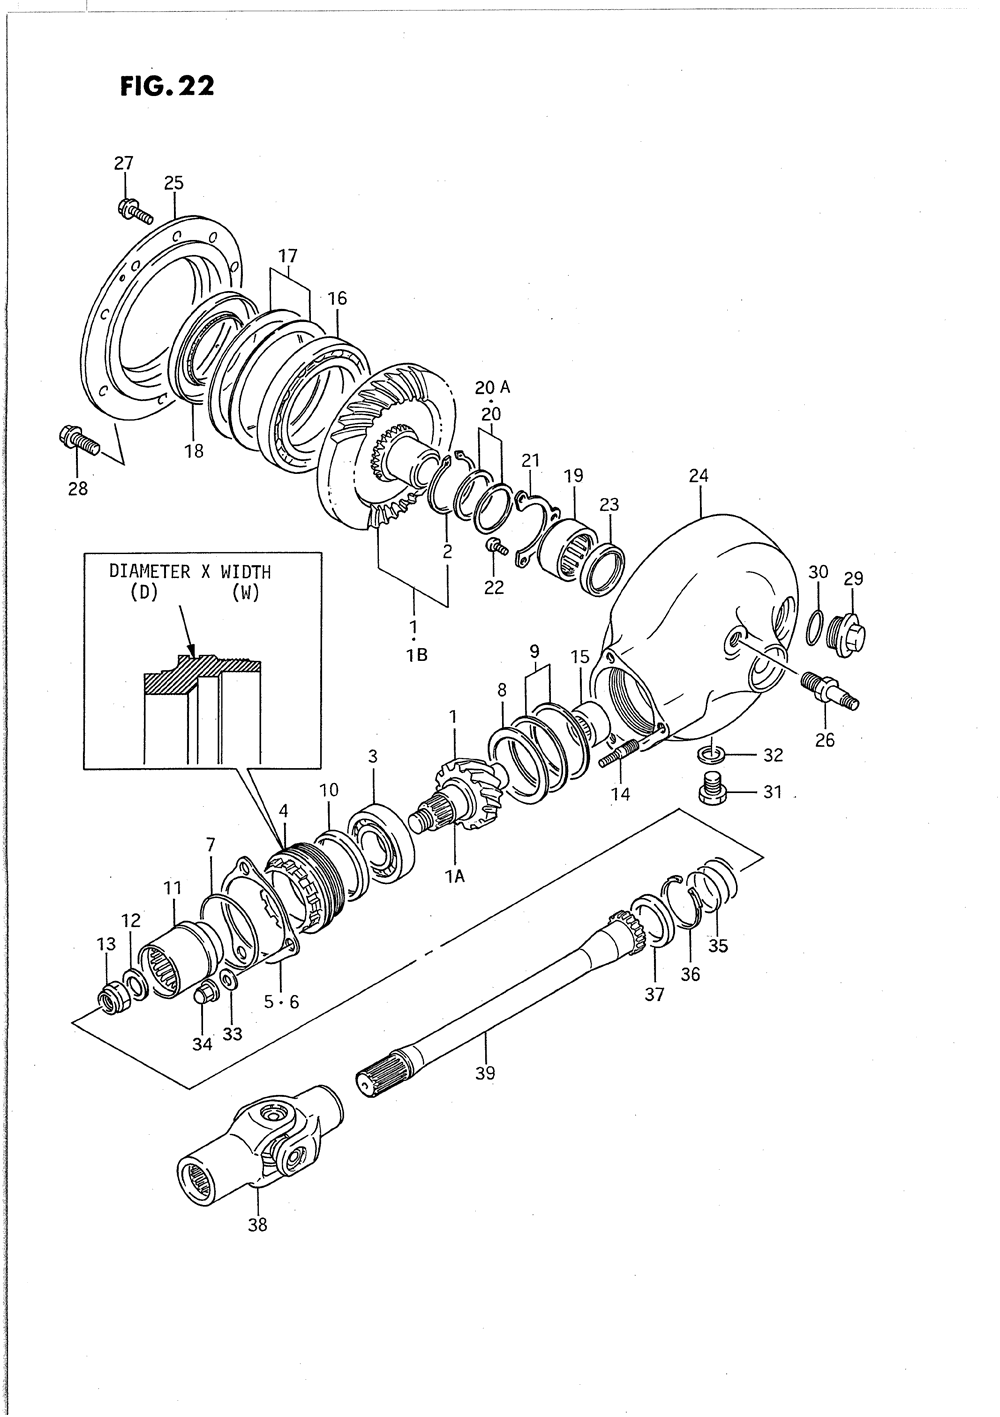 Propeller shaft - final drive gear